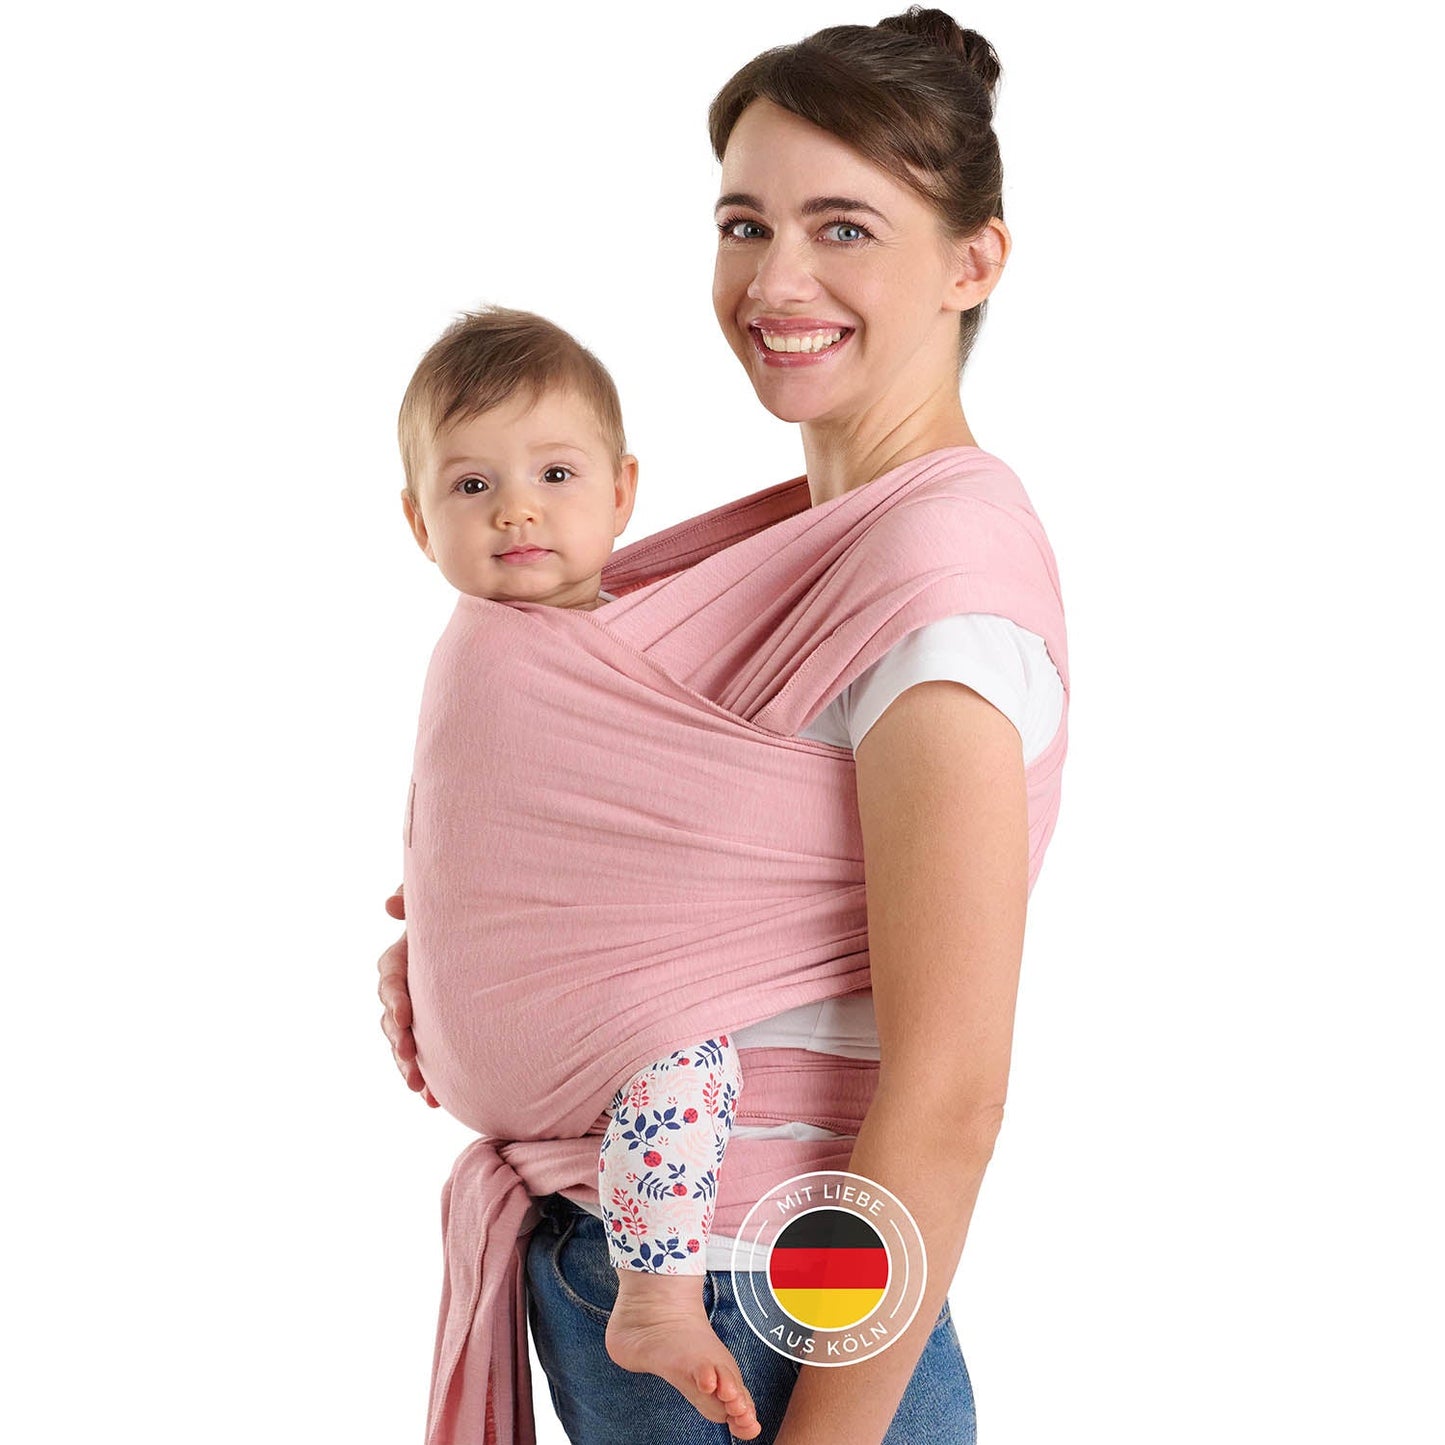 Frau mit Hochsteckfrisur trägt Baby in rosa Tragehilfe vor sich beide schauen zur Kamera.